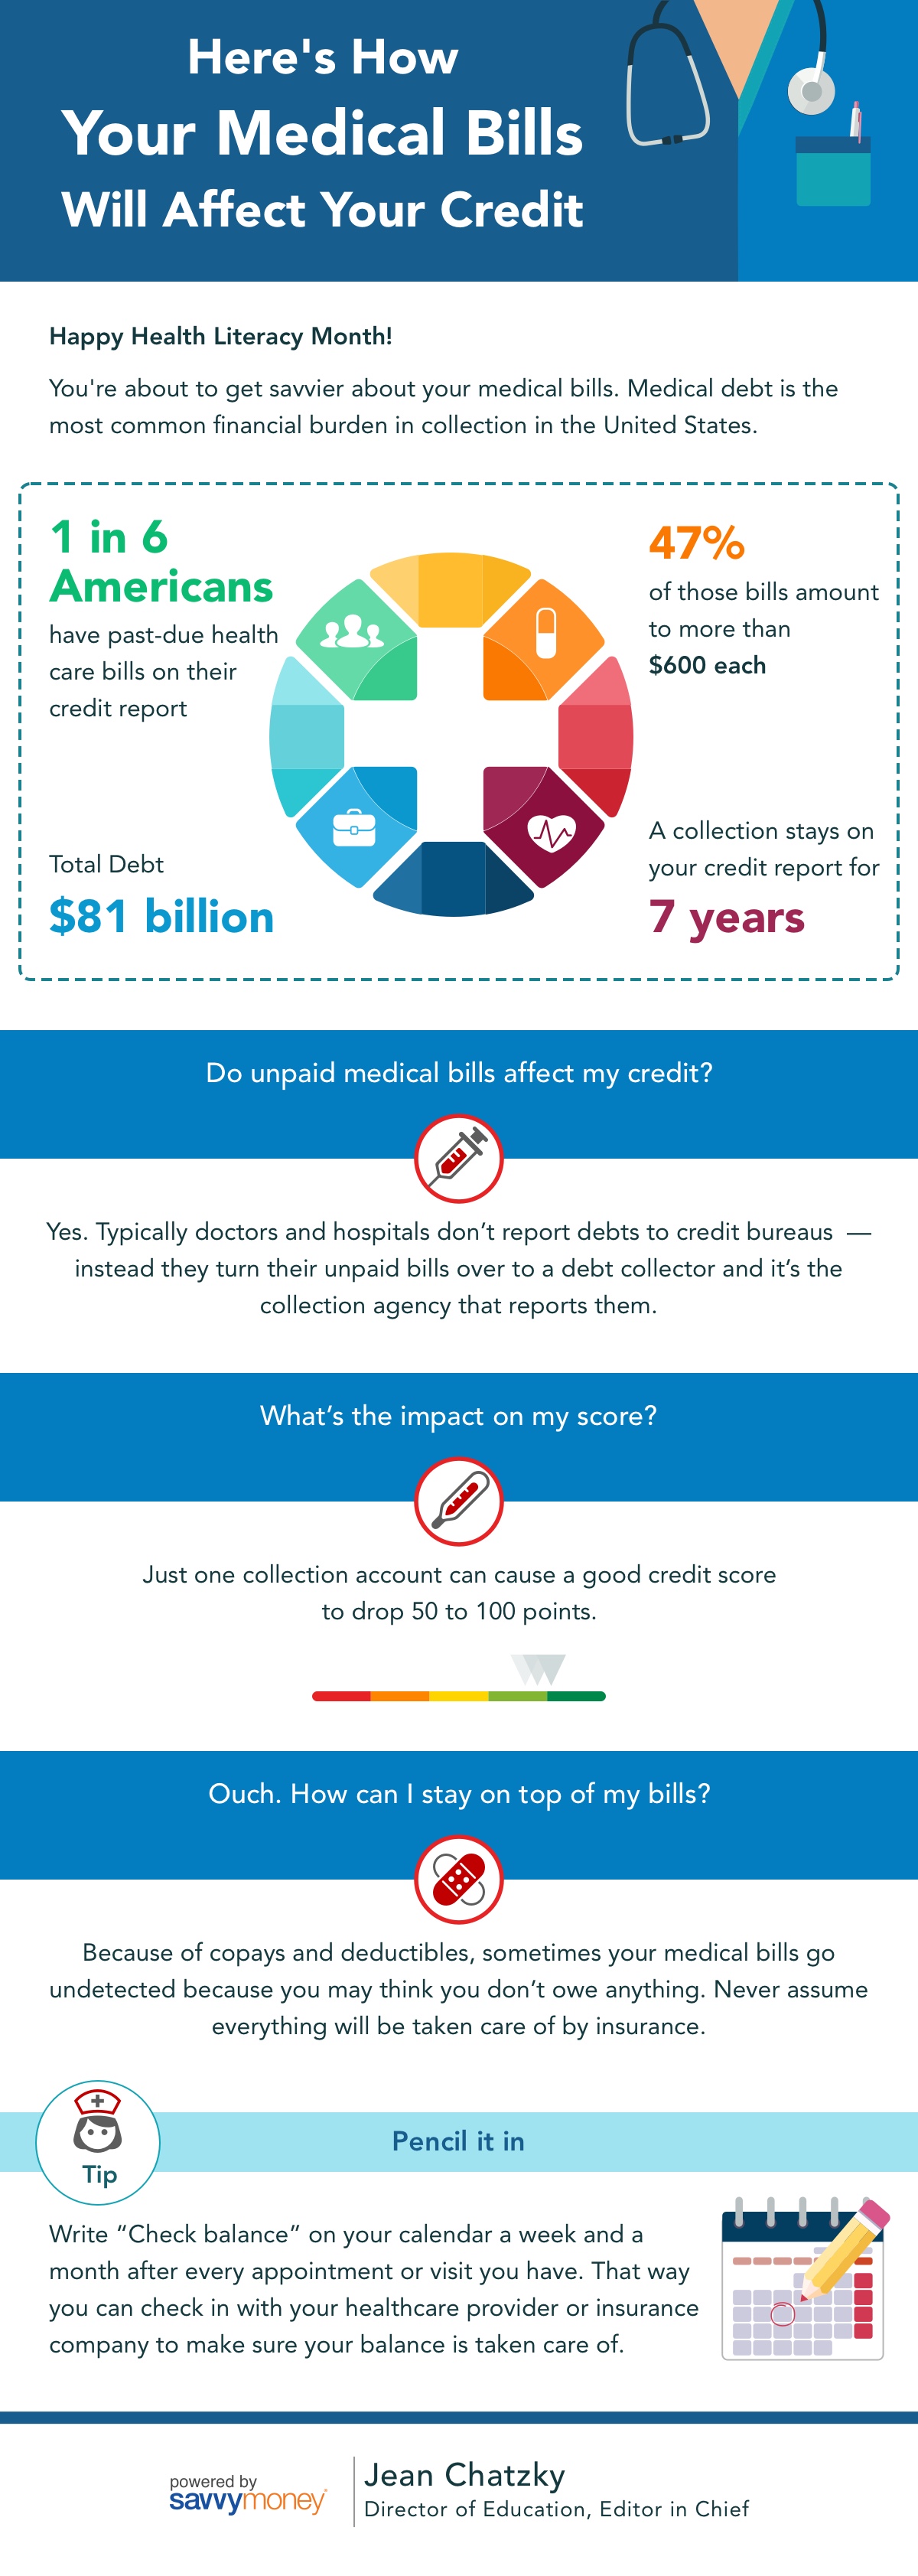 Do medical bills affect your credit?